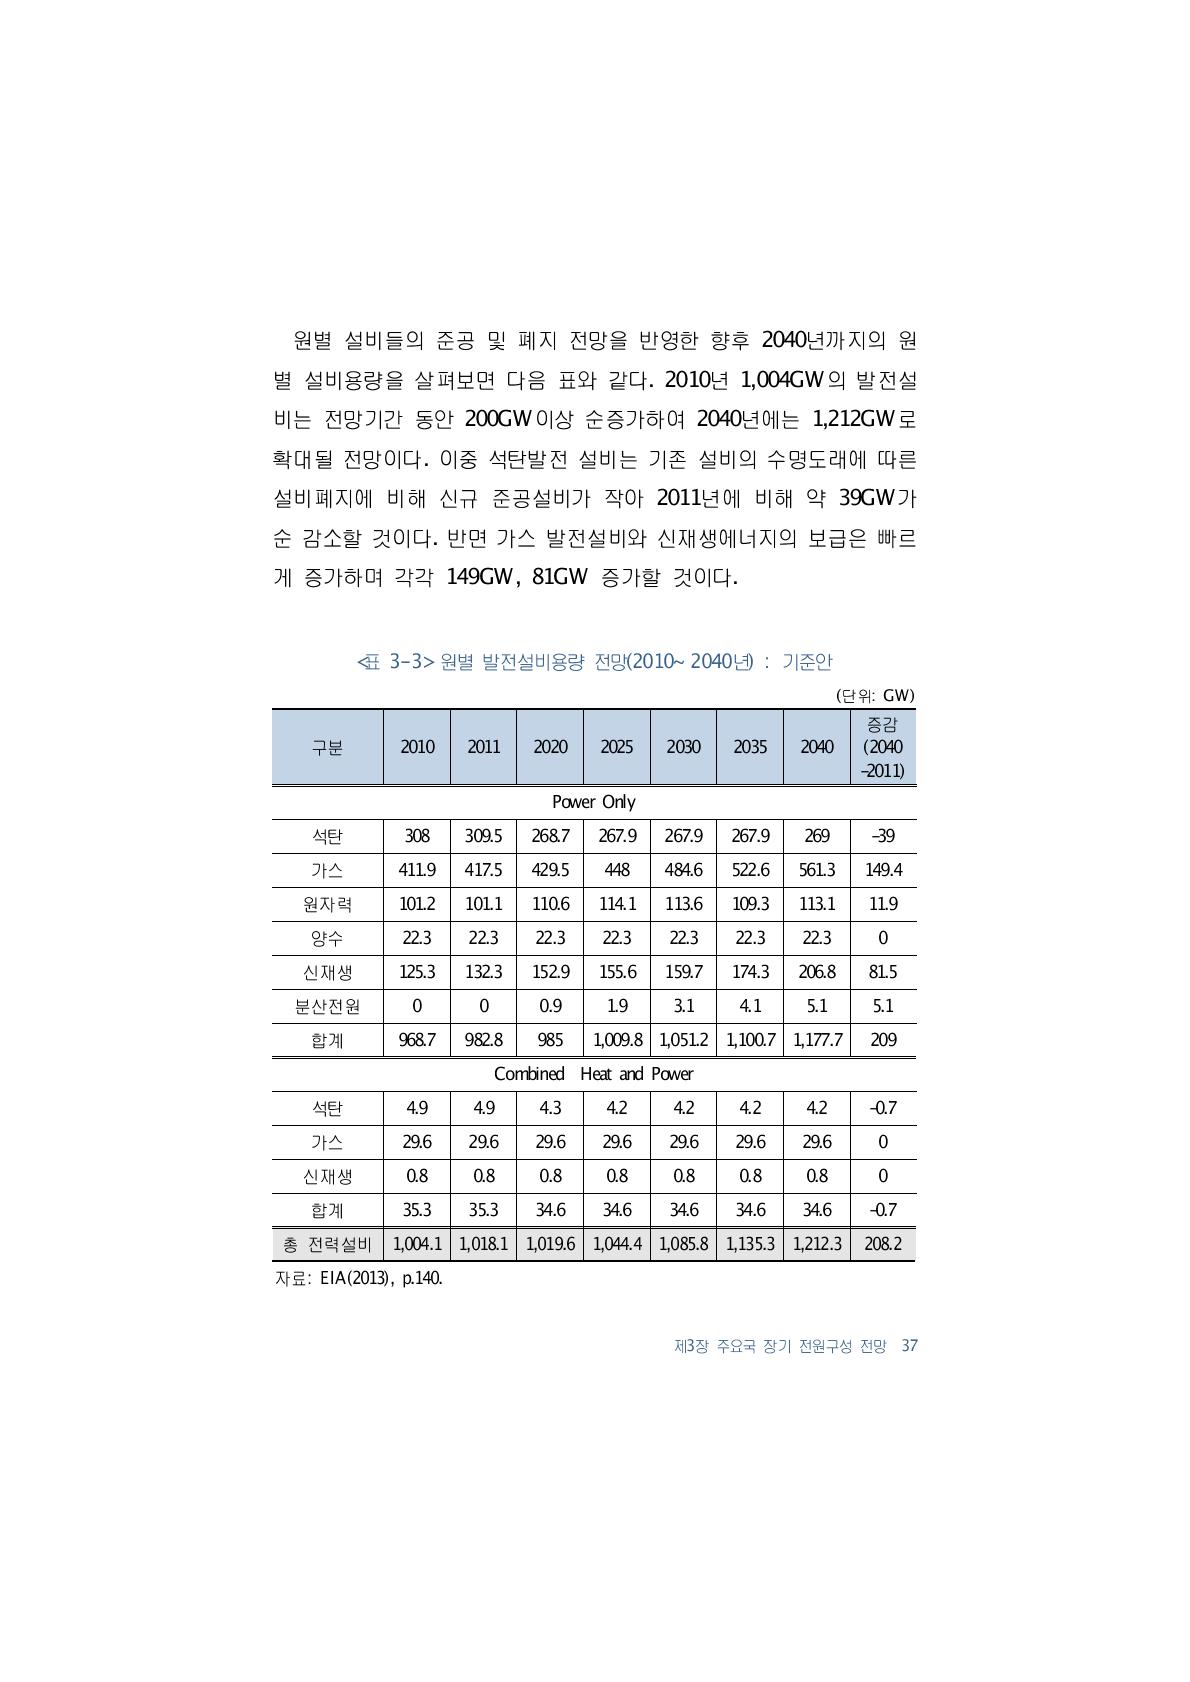 원별 발전설비용량 전망(2010~2040년) : 기준안